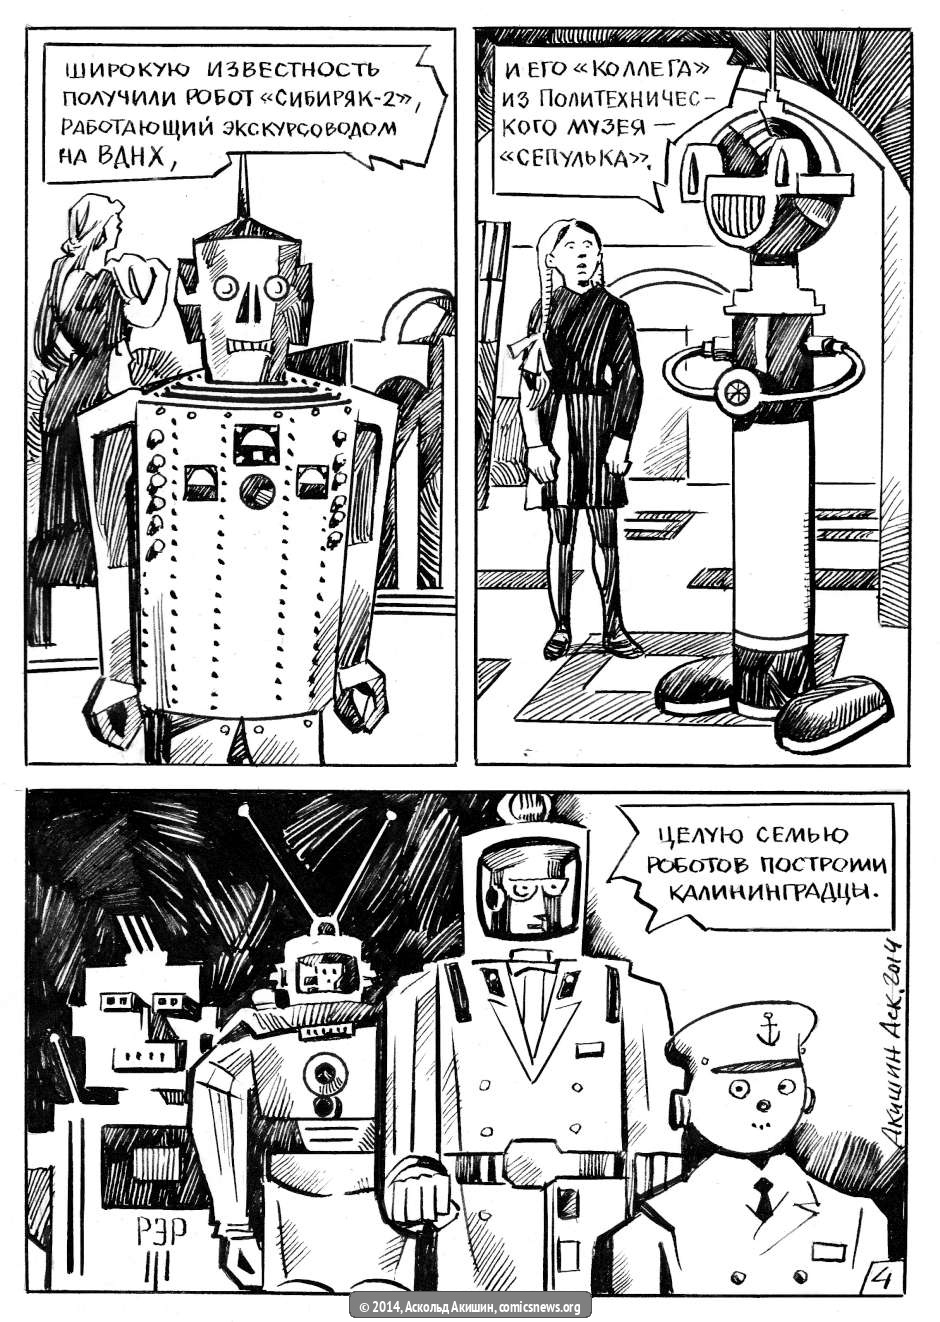 Роботы СССР - Архив Комиксолёта